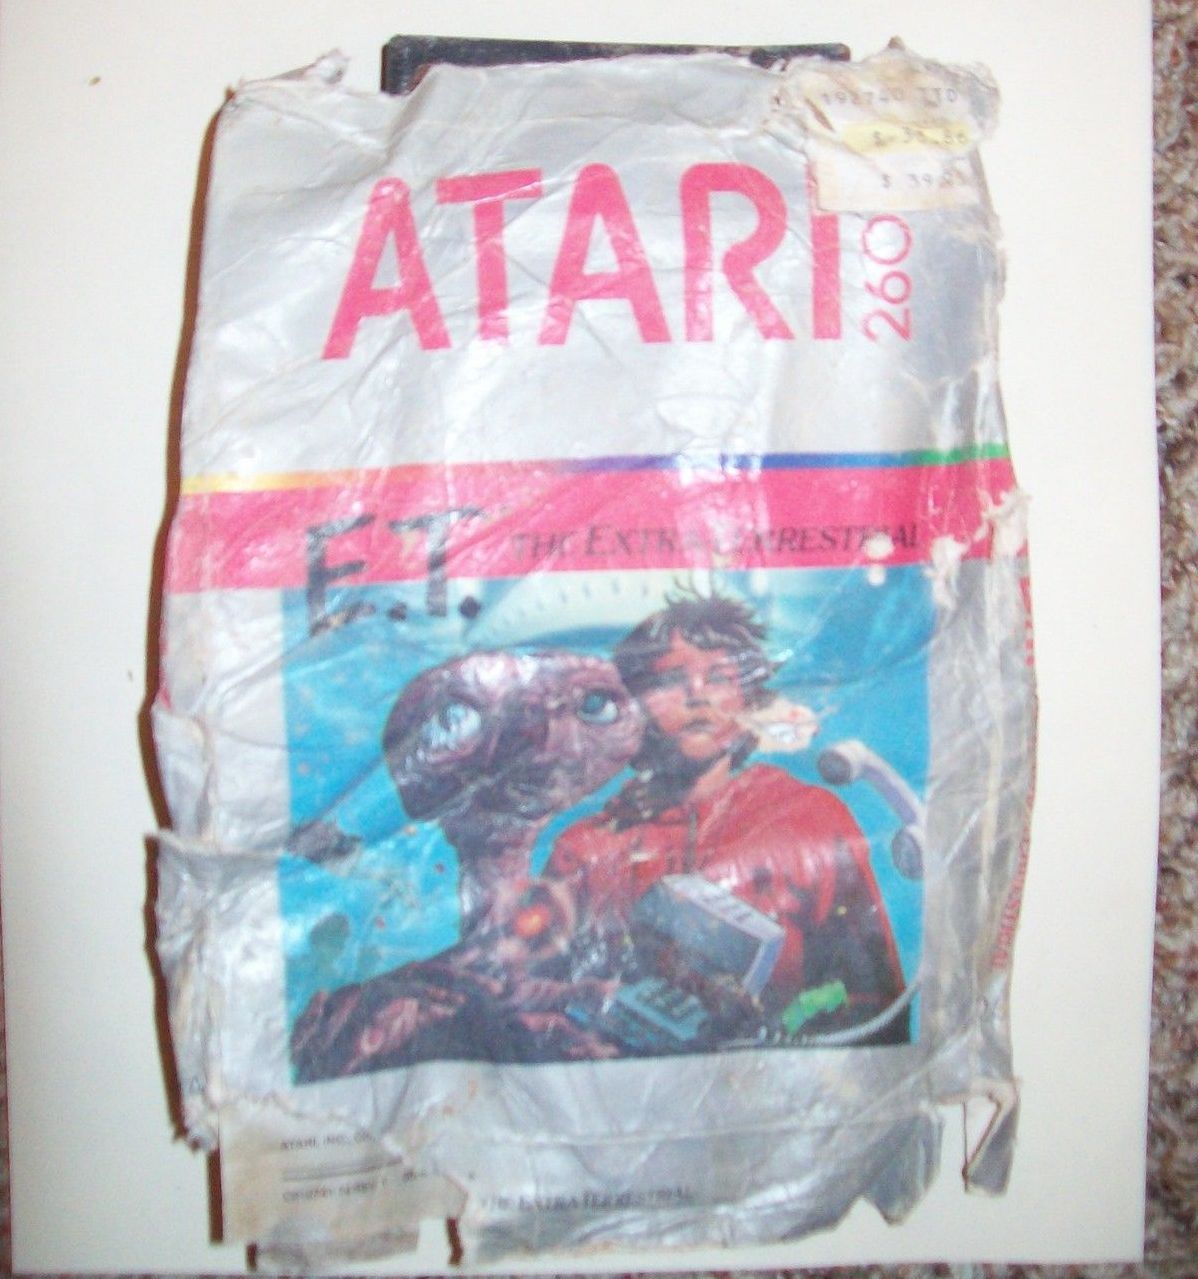 E.T. Atari game